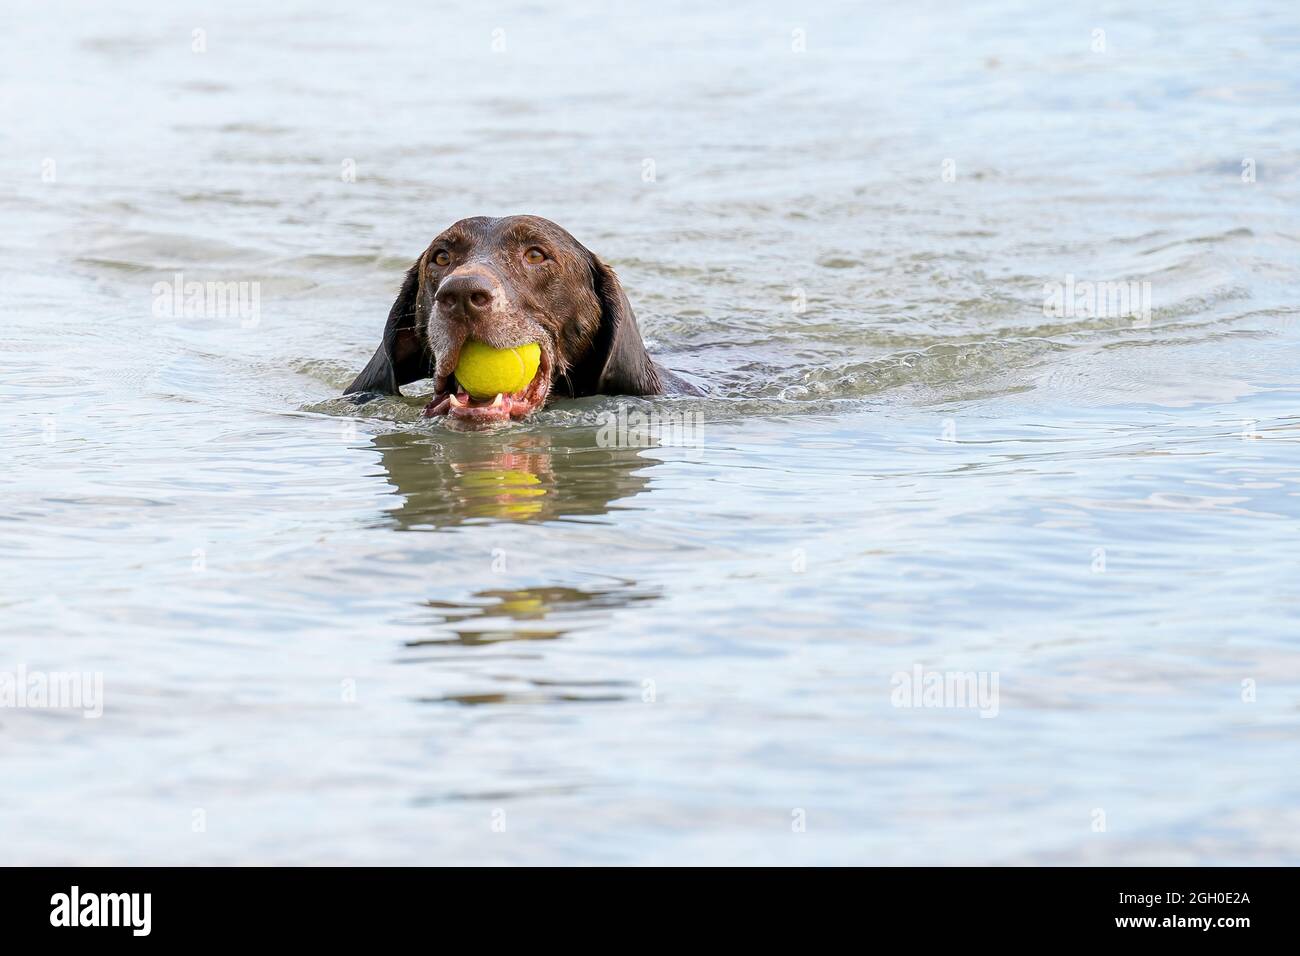 Puntatore tedesco a capelli corti dettagliato. Il cane nuota nel lago blu con una palla da tennis gialla in bocca. Durante una giornata estiva Foto Stock